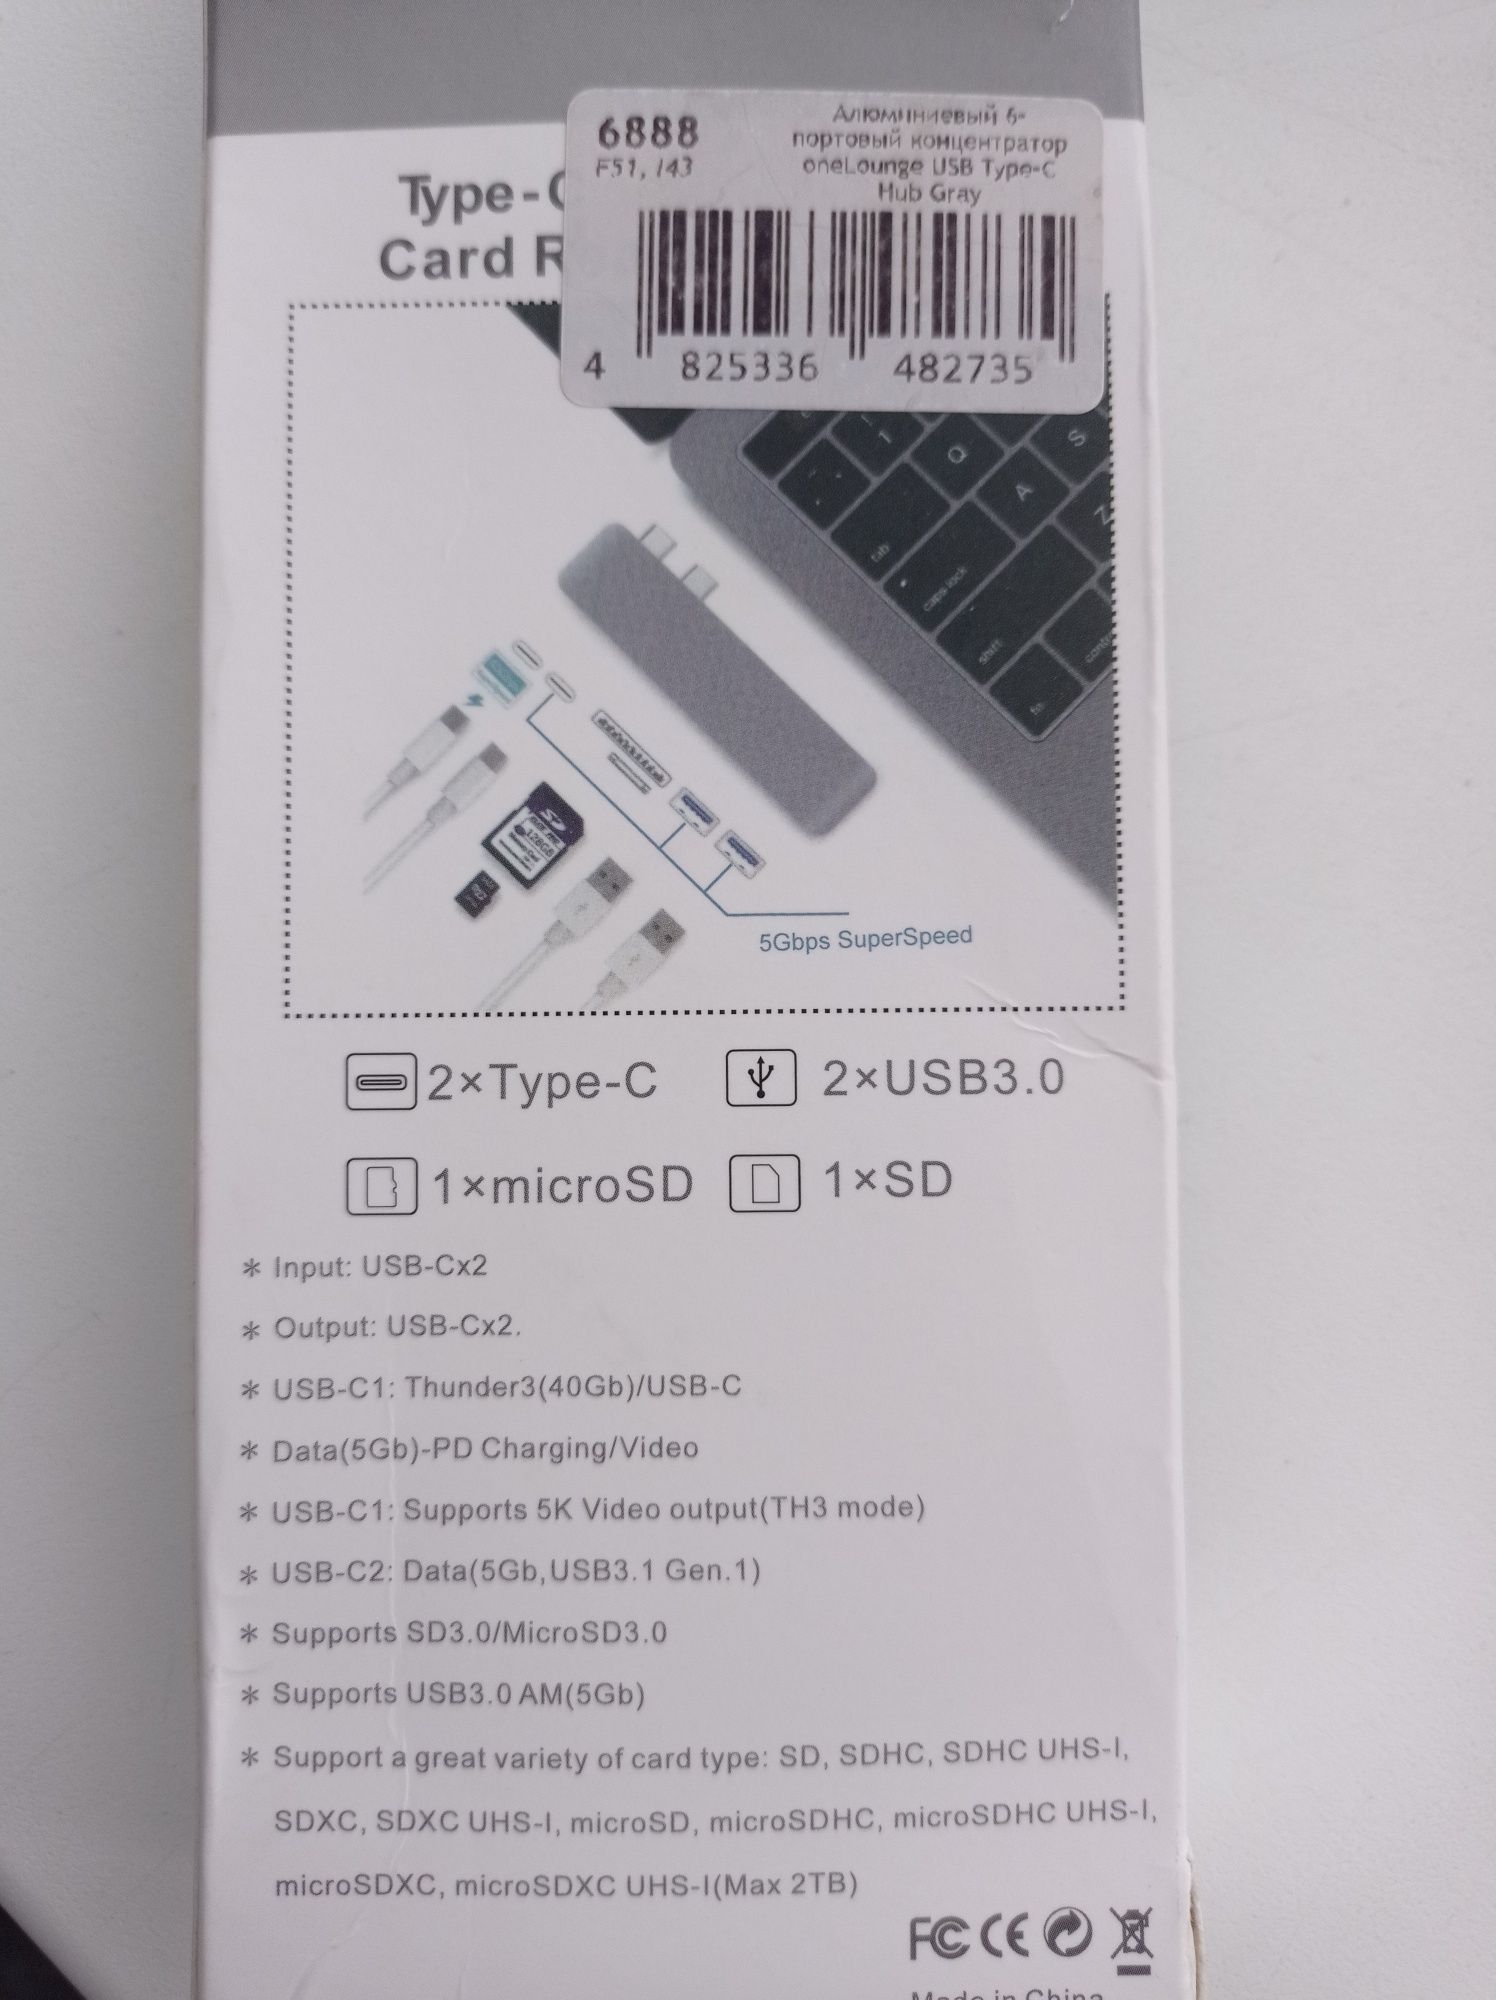 Алюминиевый 6-портовый концентратор oneLounge USB Type-C Hub Gray